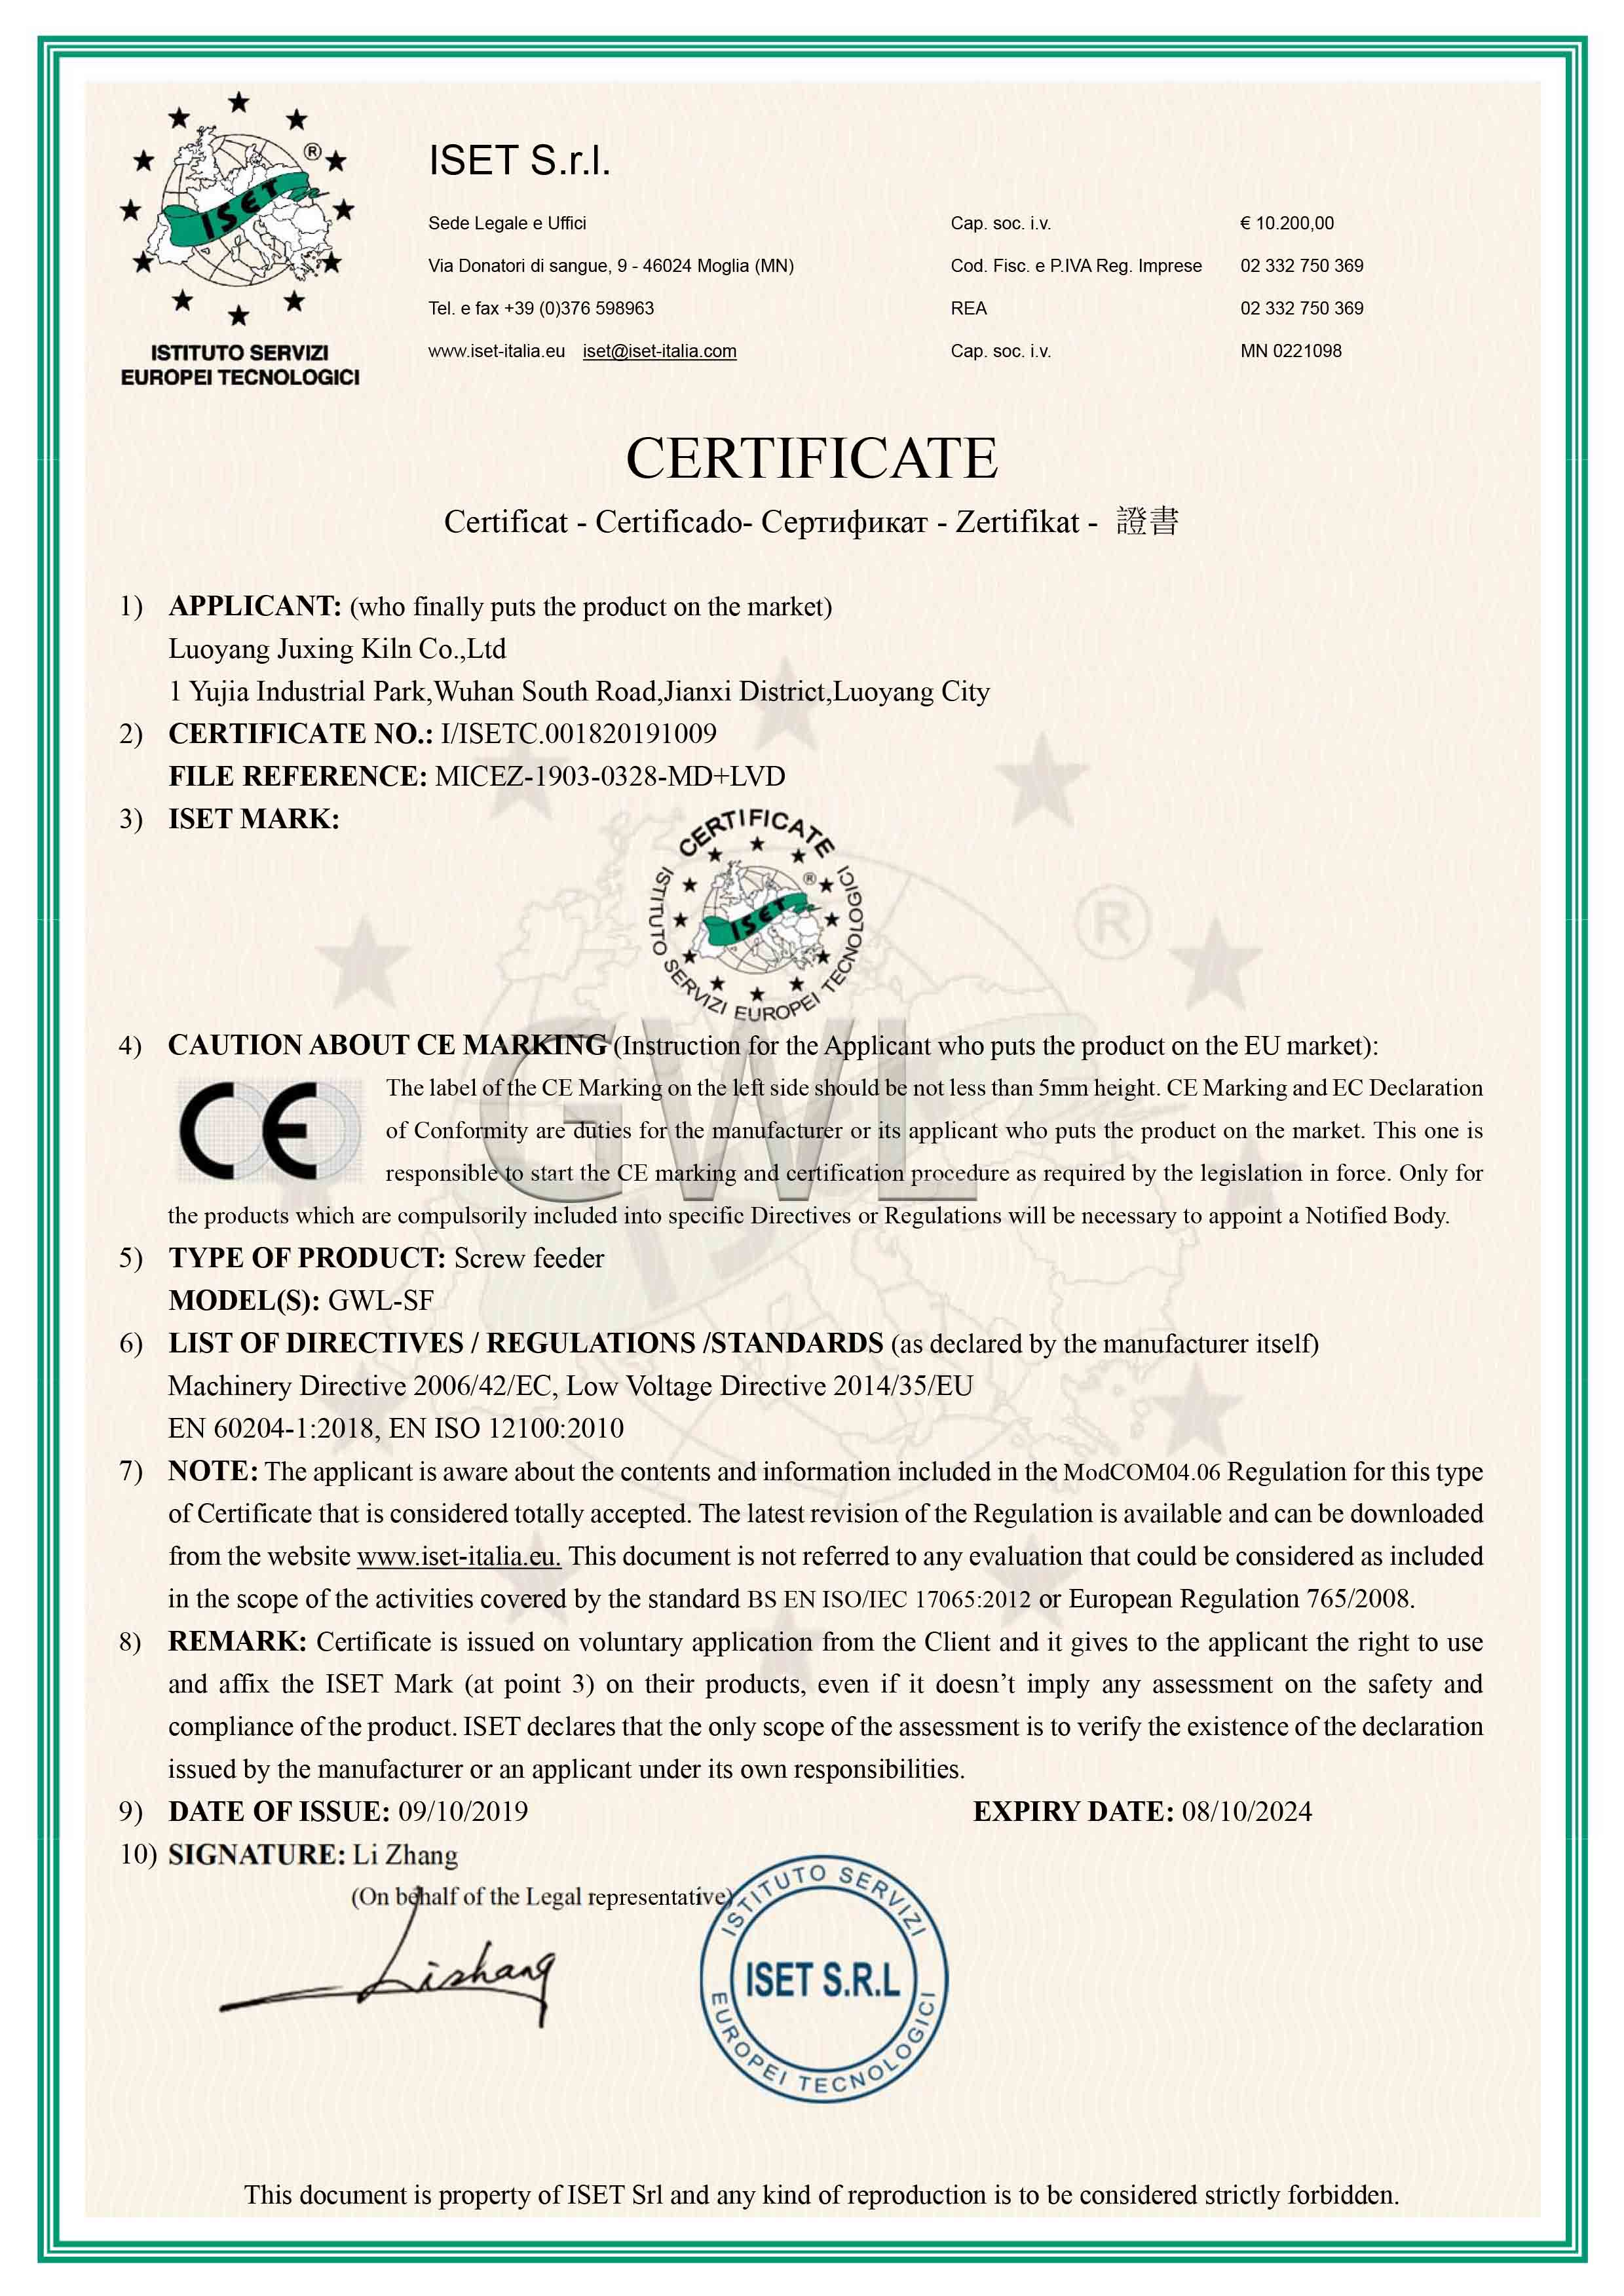 炬星GWL高温螺旋喂料机欧盟认证CE证书